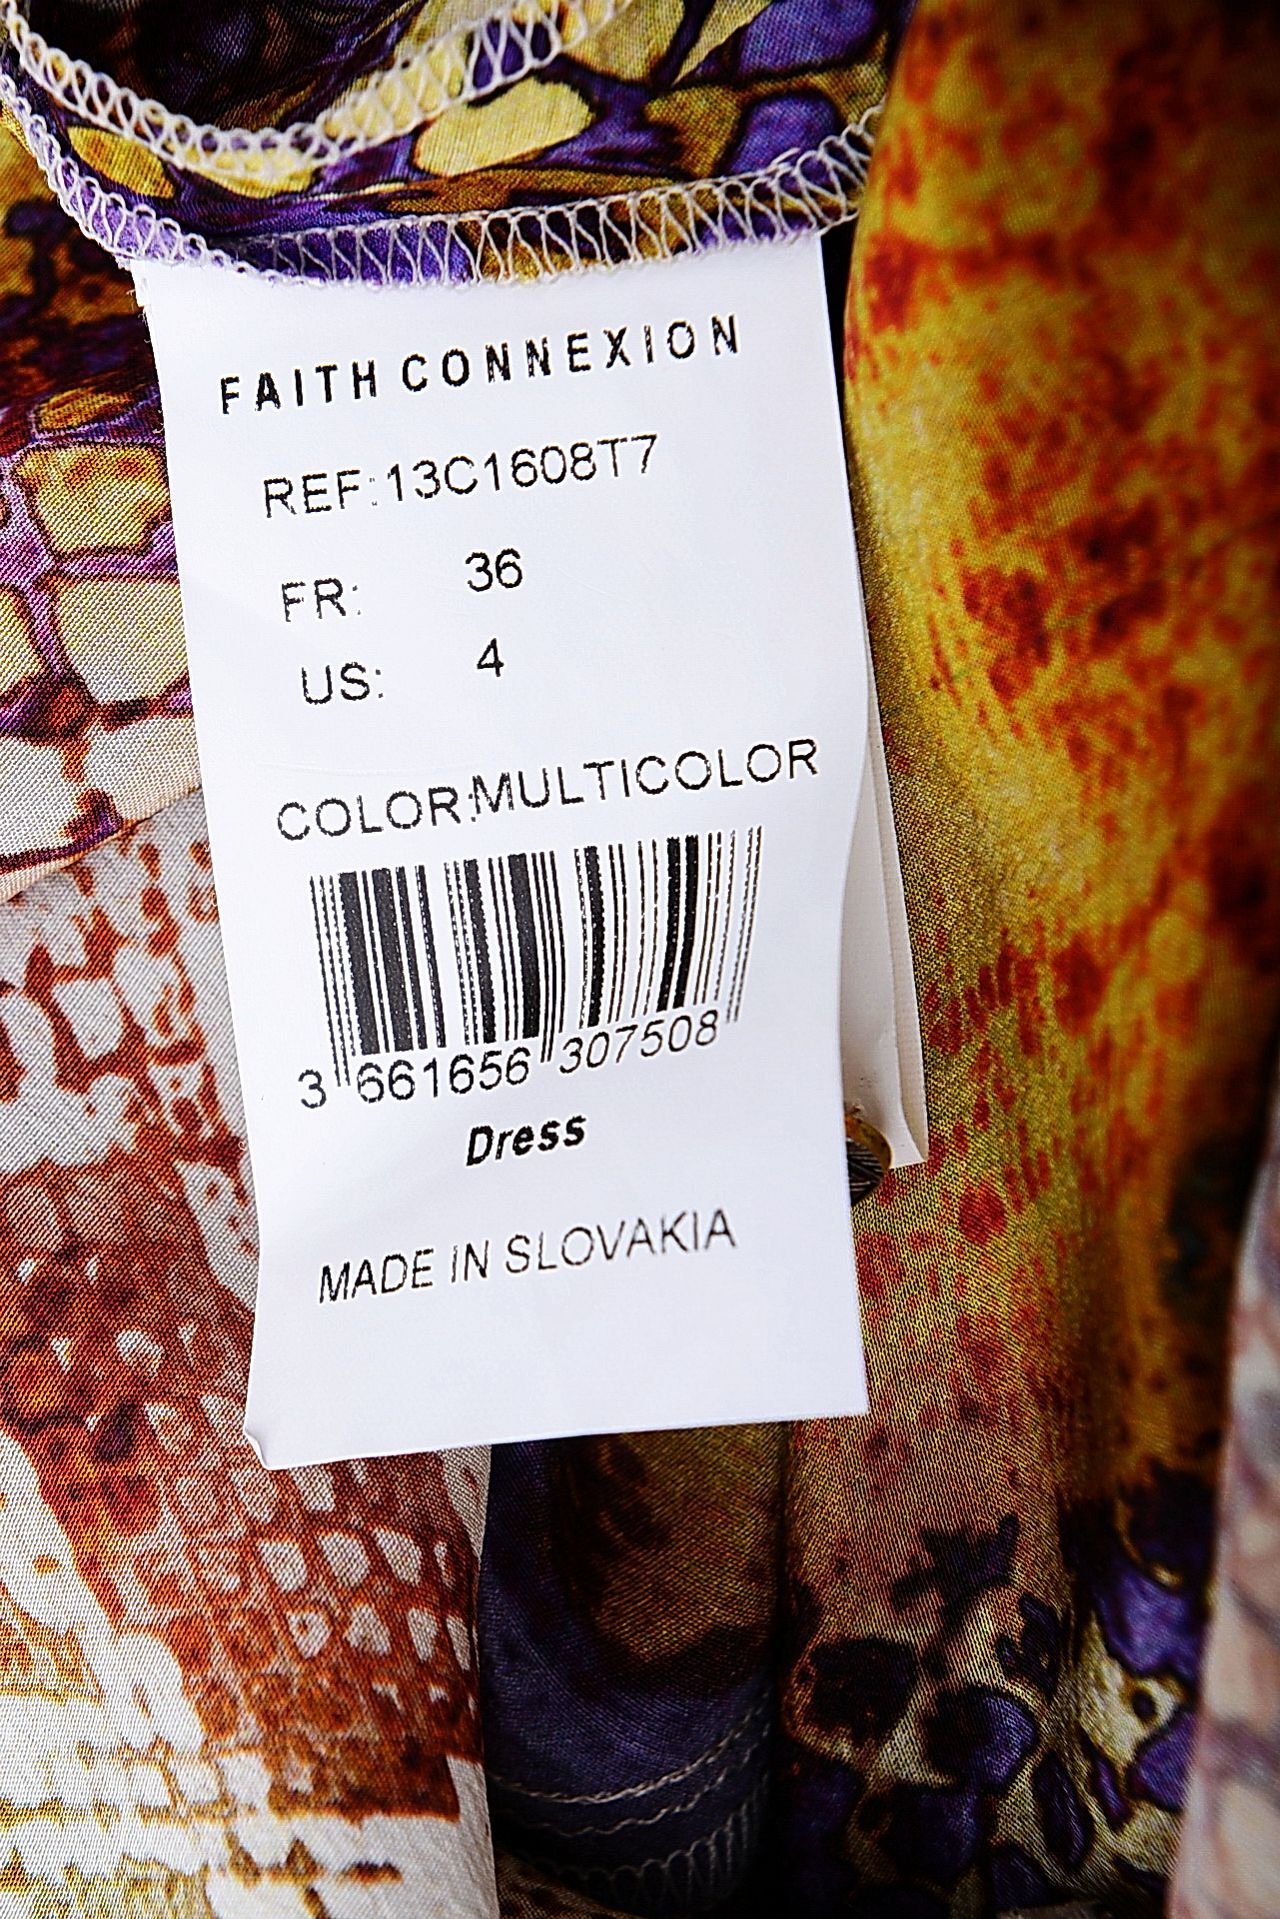  FAITH CONNEXION,  46 